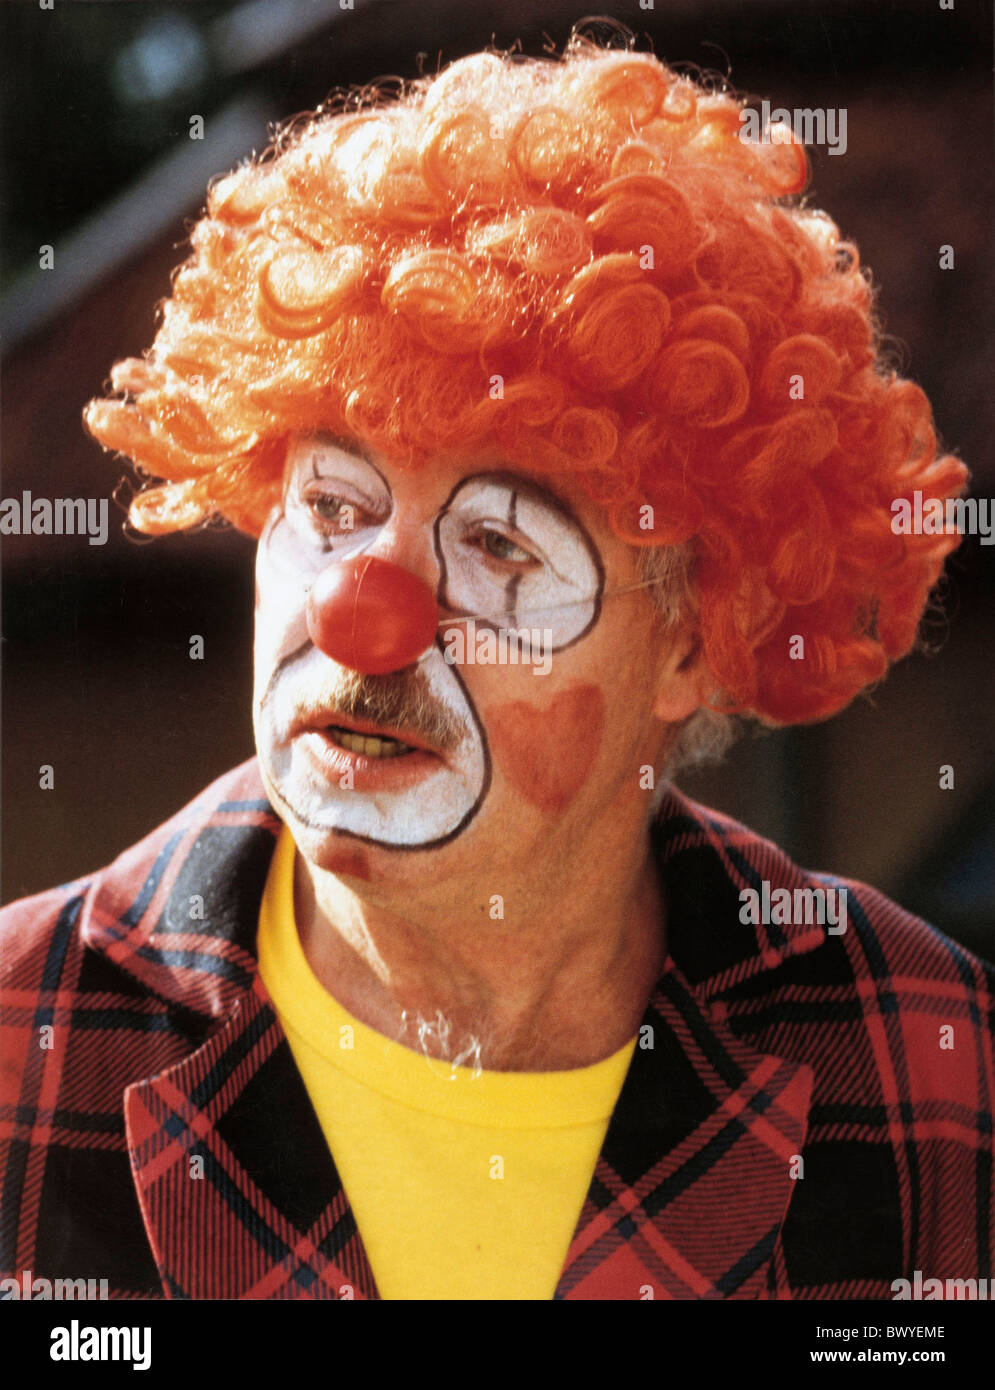 Clown gioia umorismo uomo parrucca ritratto rosso naso divertente scherzo abiti fino dissimulare fancy dress circus Foto Stock